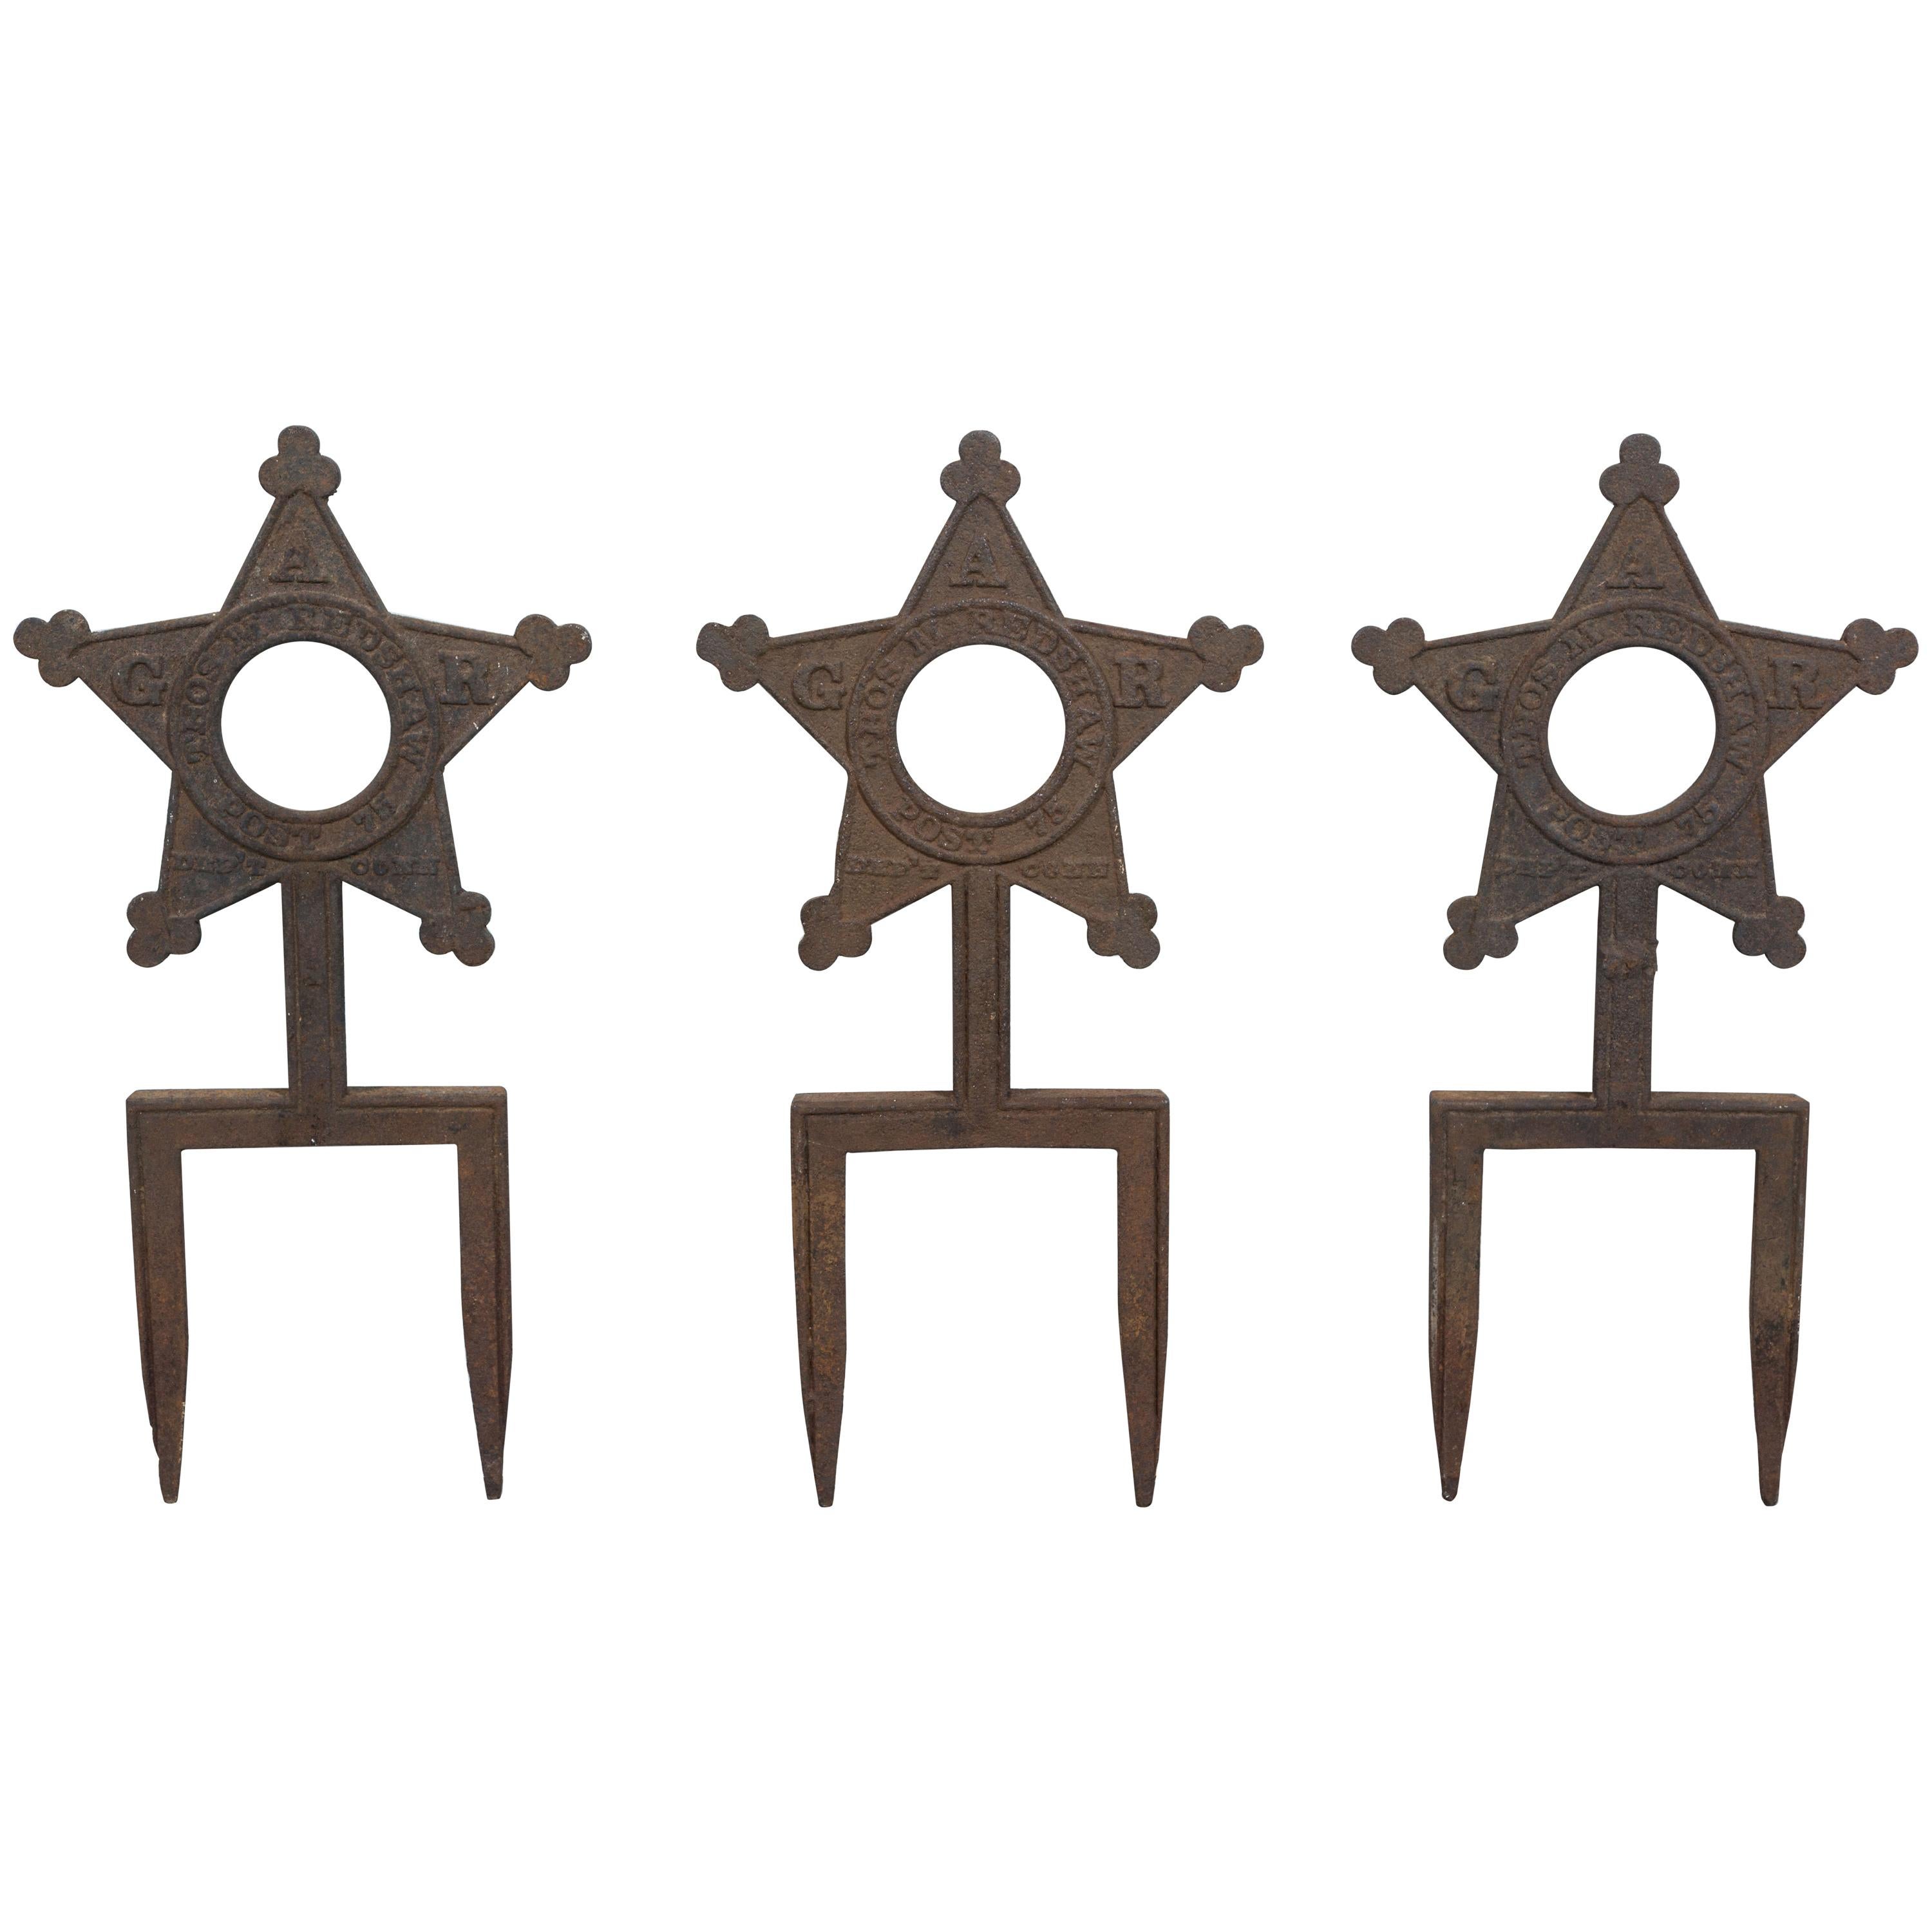 Kollektion von drei viktorianischen Sternsternmarkierungen der Revolution aus Gusseisen